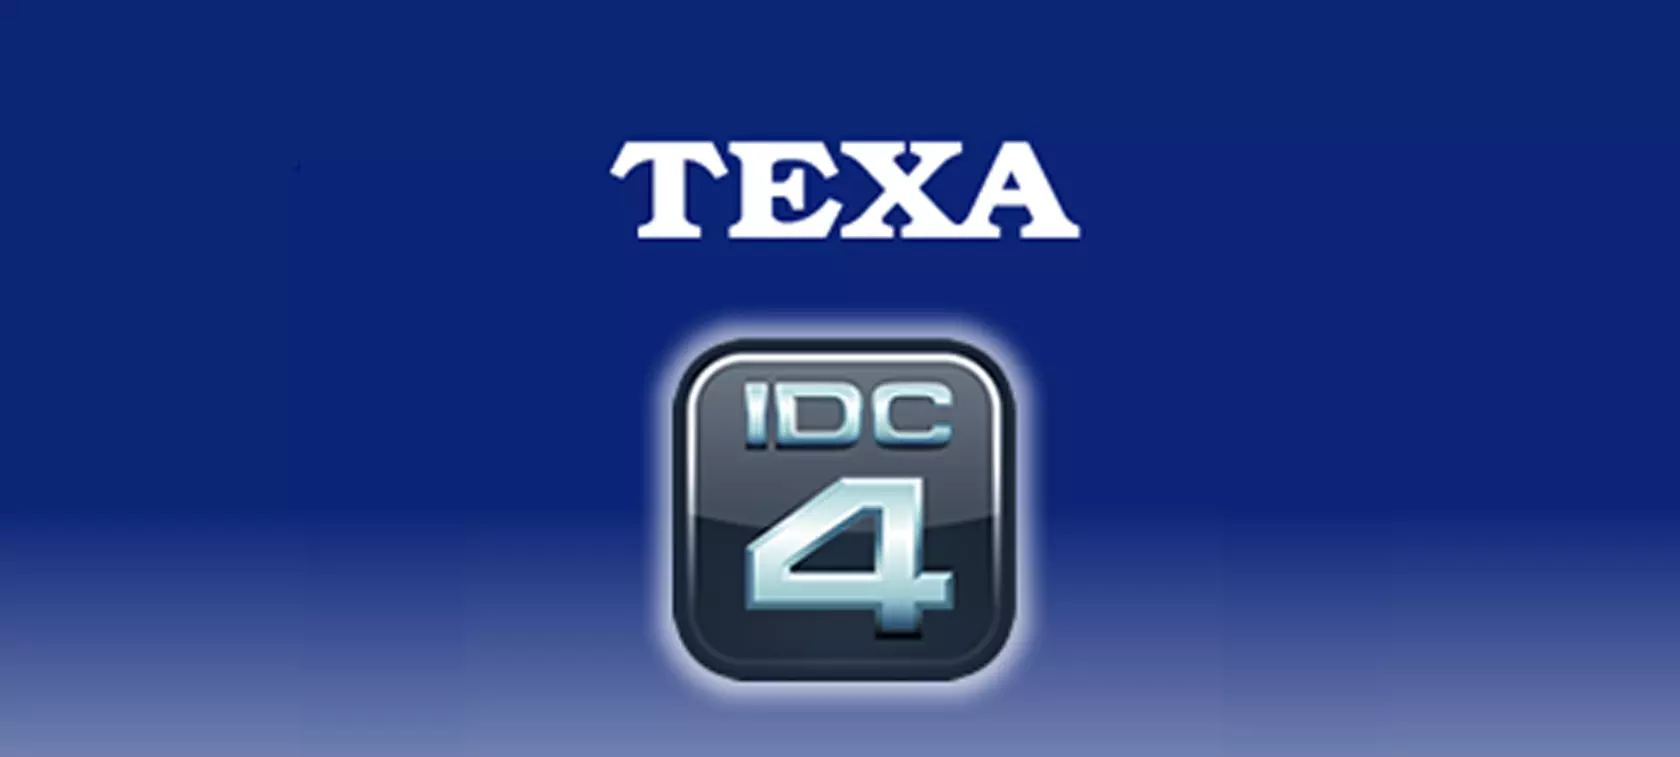 Aktualizacja TEXA IDC4 CAR dla warsztatów LPG